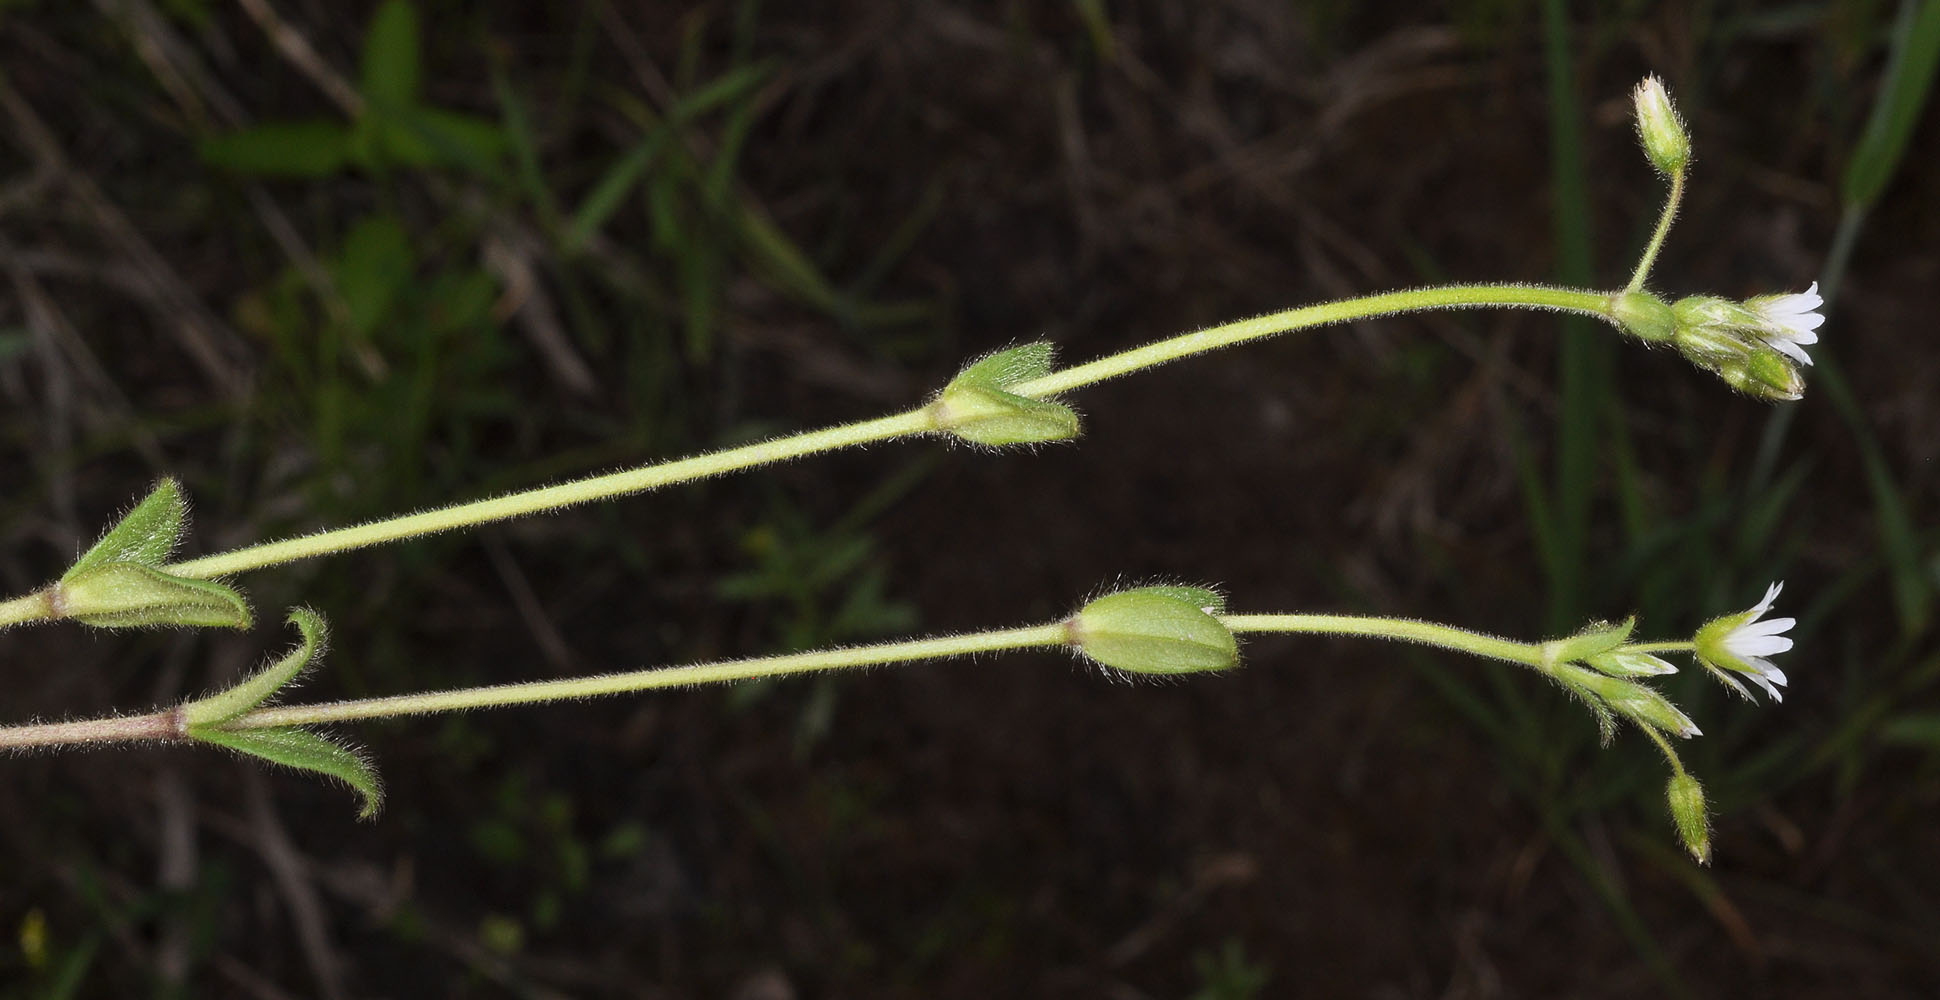 Flora of Eastern Washington Image: Cerastium nutans